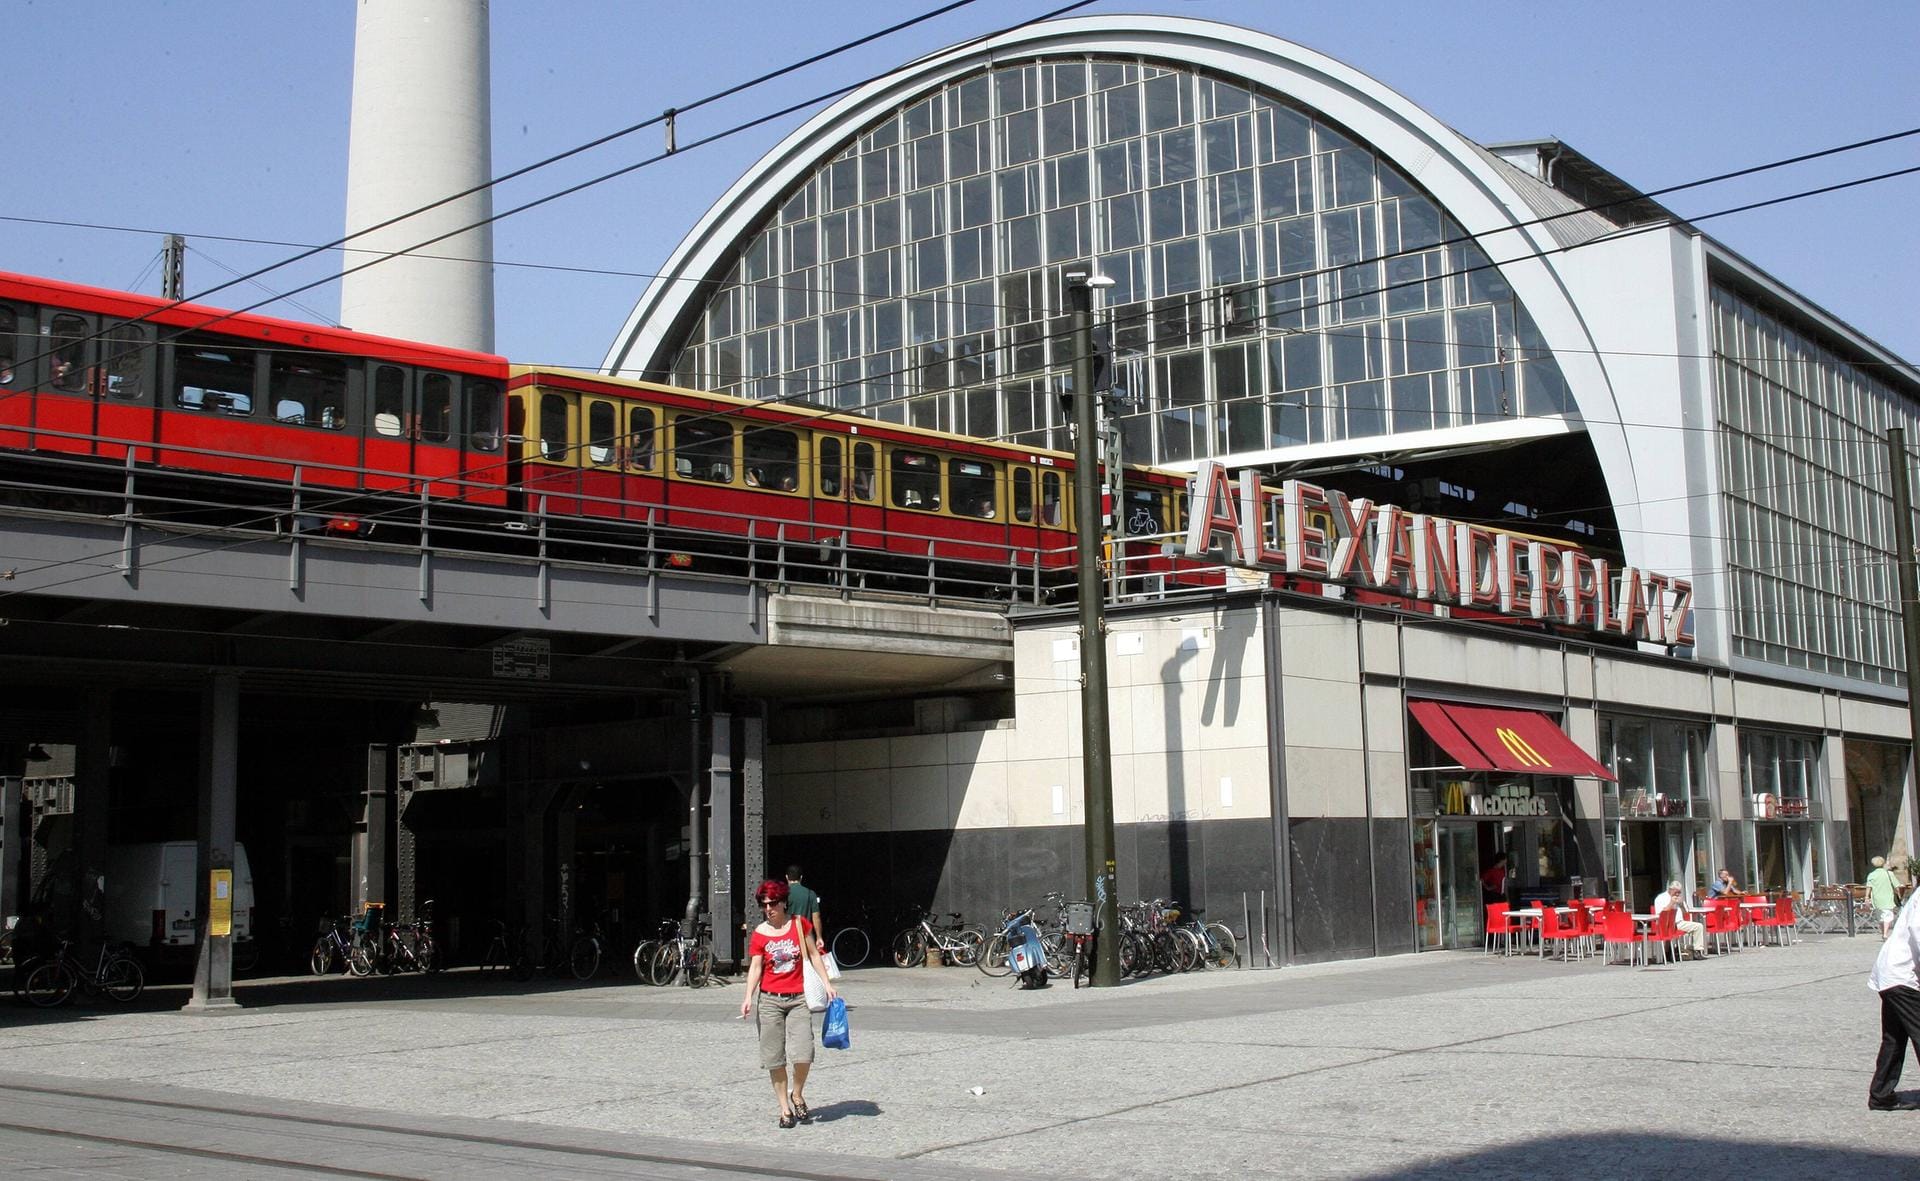 Der Bahnhof Alexanderplatz heute: Mit im Schnitt über 150.000 Reisenden und Besuchern täglich ist der Bahnhof einer der meistfrequentierten Deutschlands.